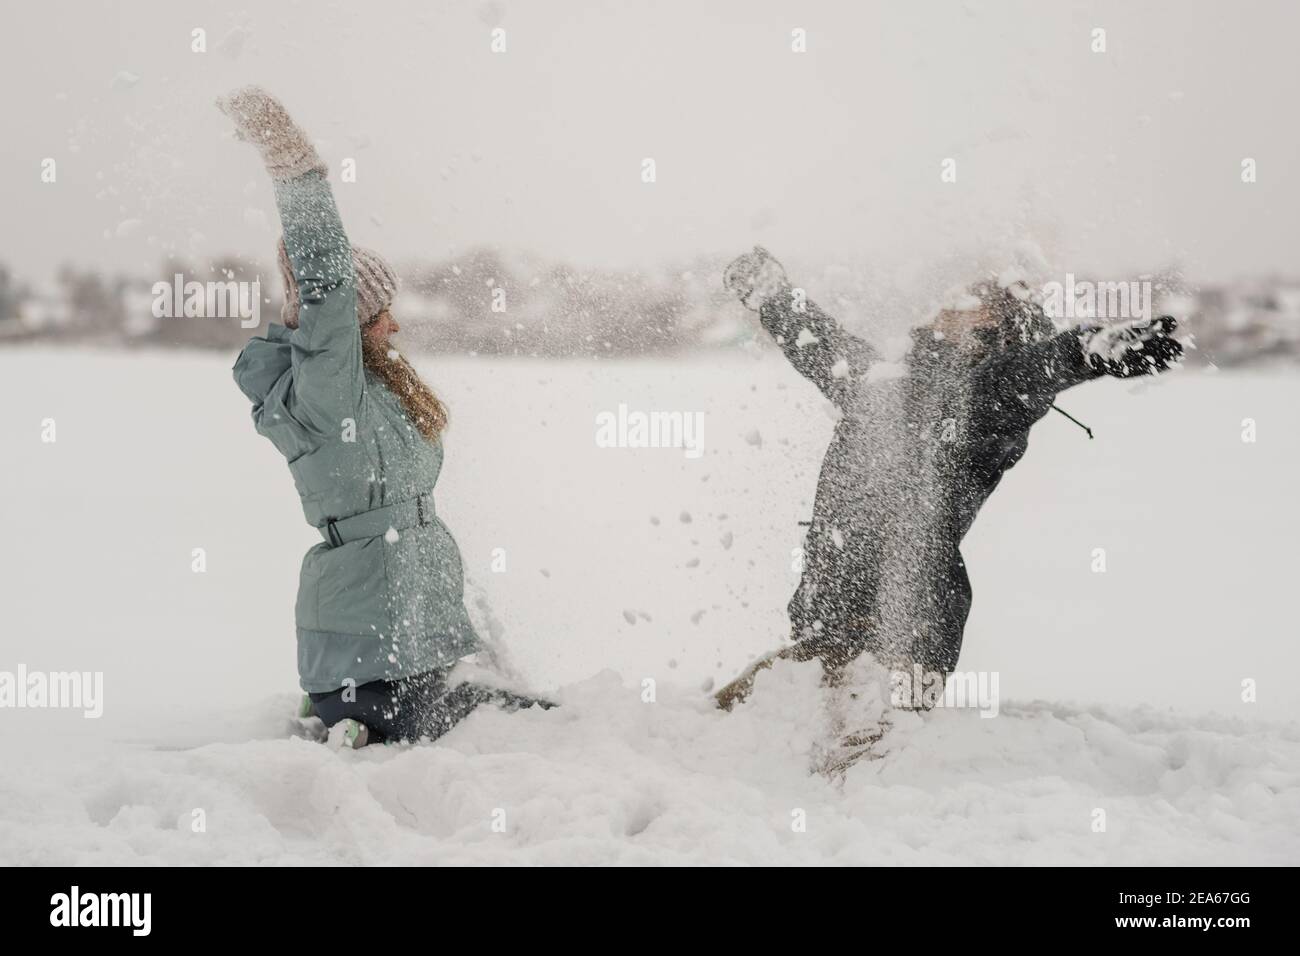 Lucha De La Bola De Nieve - Hombre En Chaqueta Caliente Imagen de archivo -  Imagen de felicidad, riéndose: 13178815